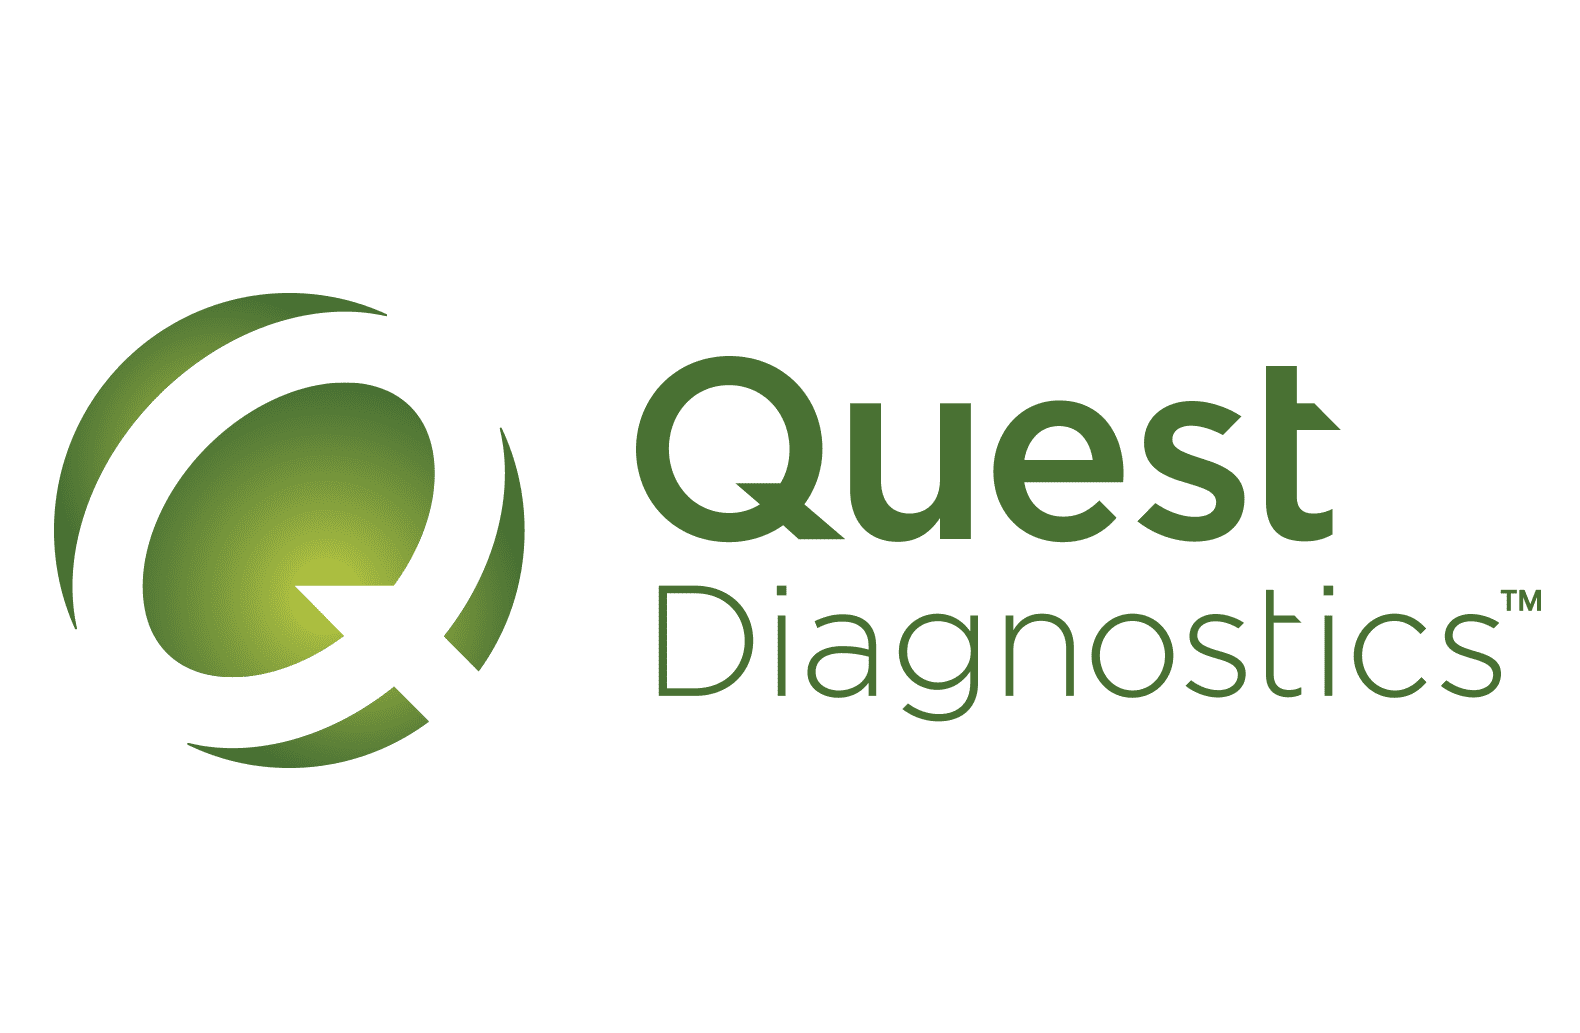  2022/10/Quest-Diagnostics-logo.png 